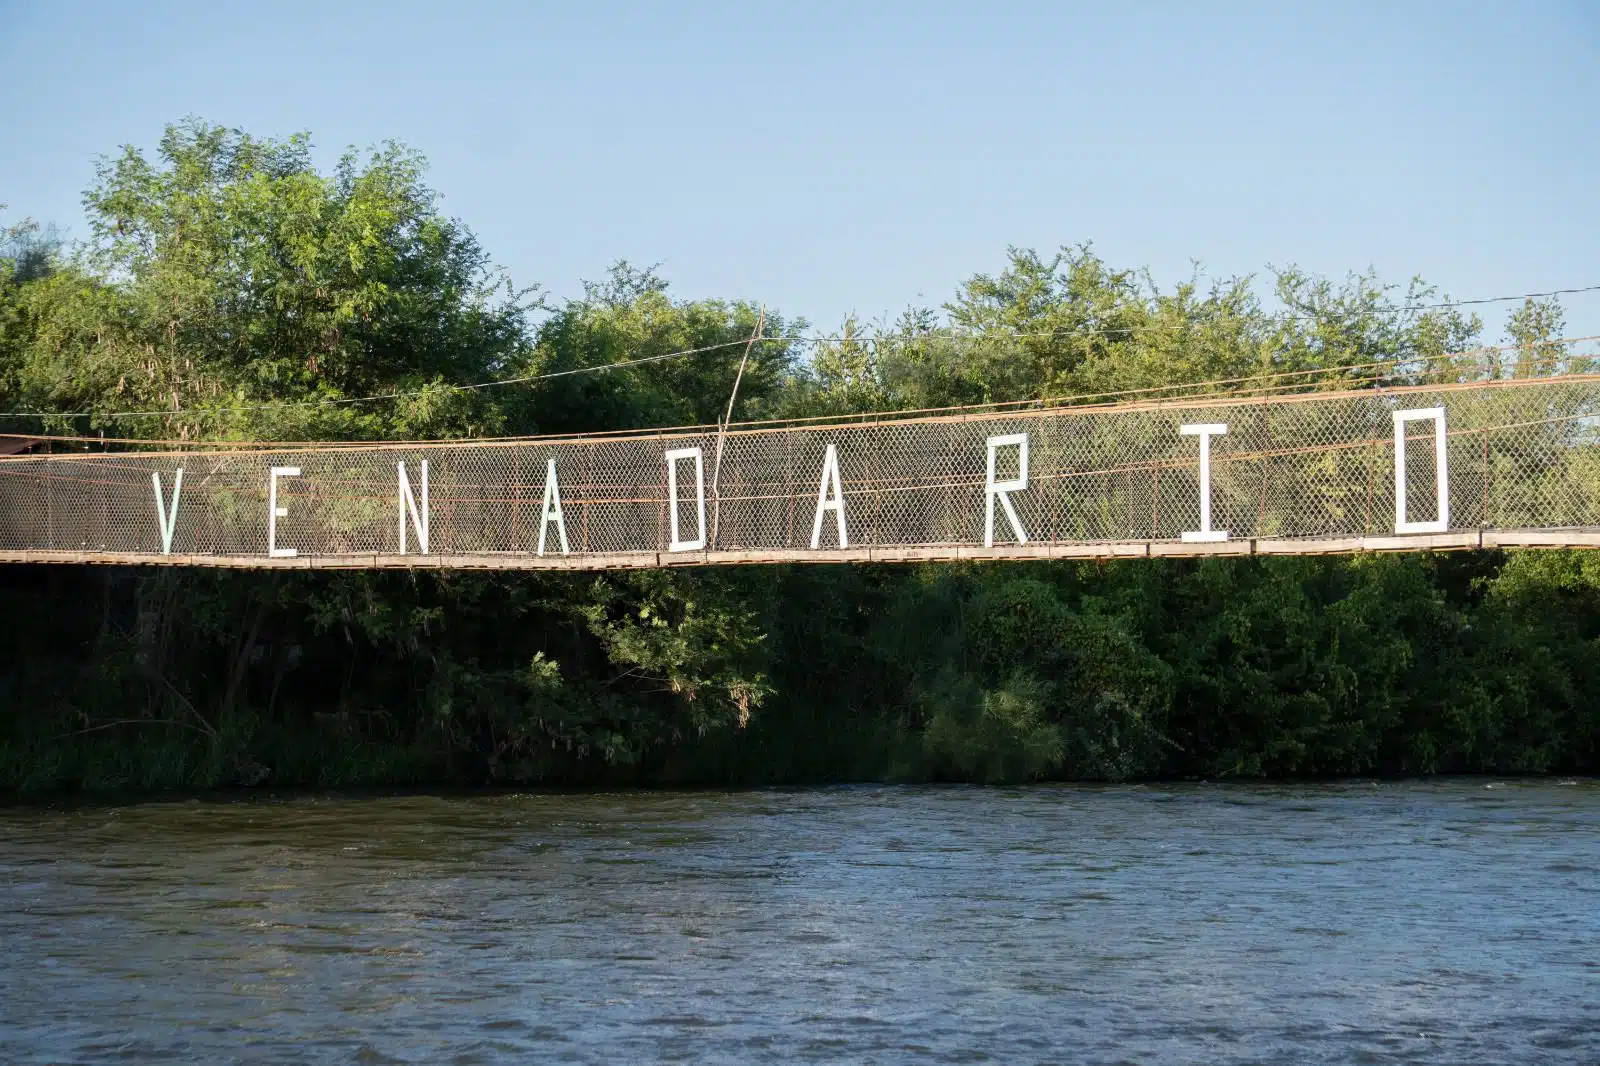 Puente de El Venadario